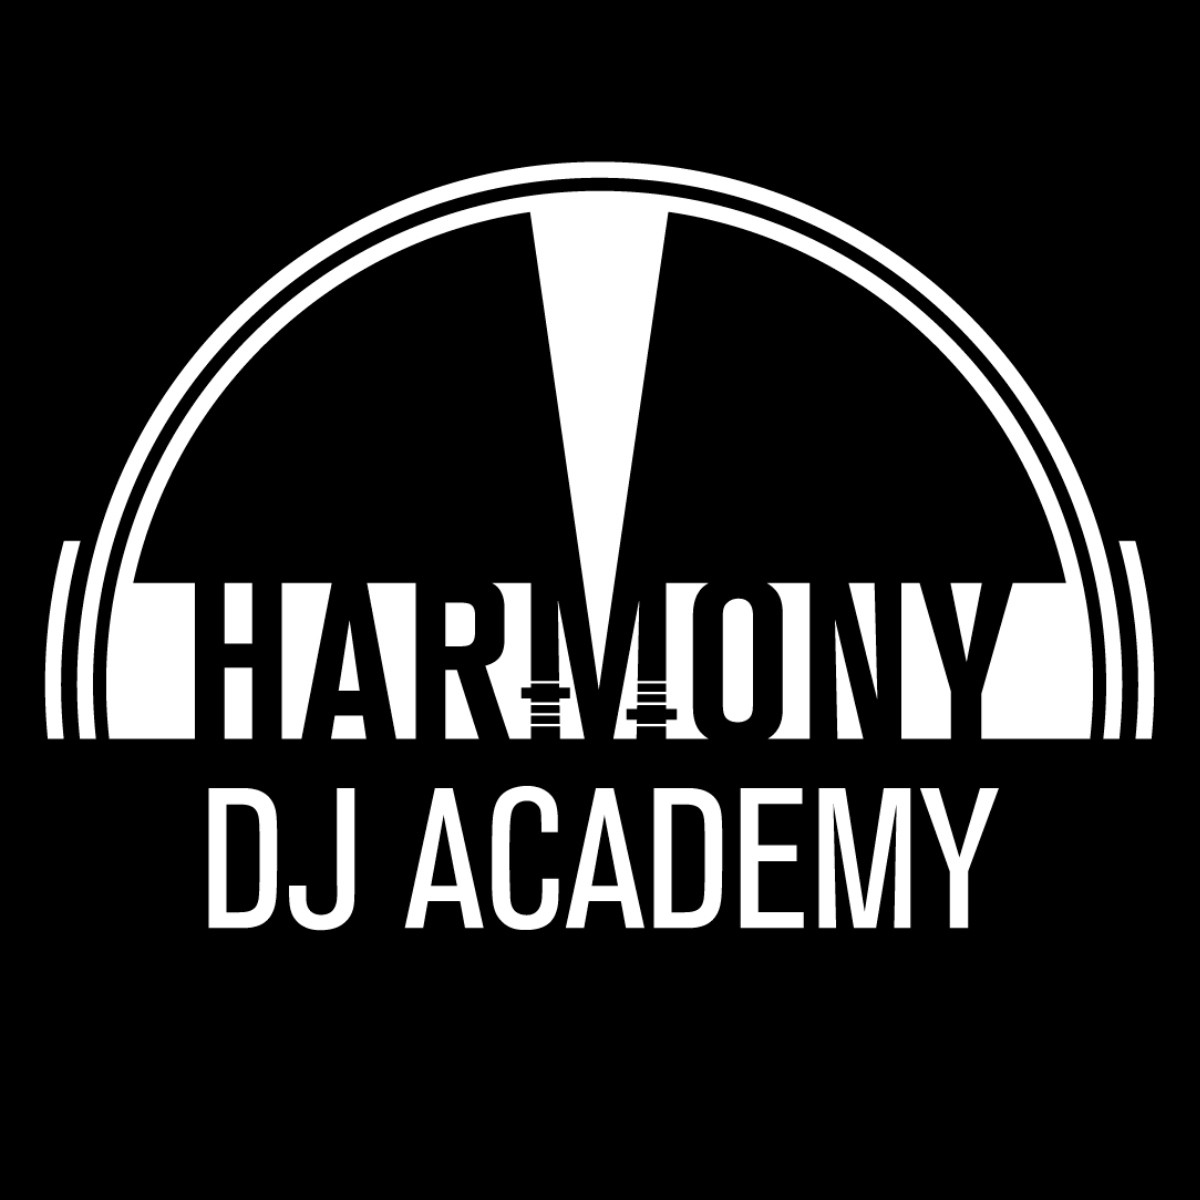 www.harmonydjacademy.net